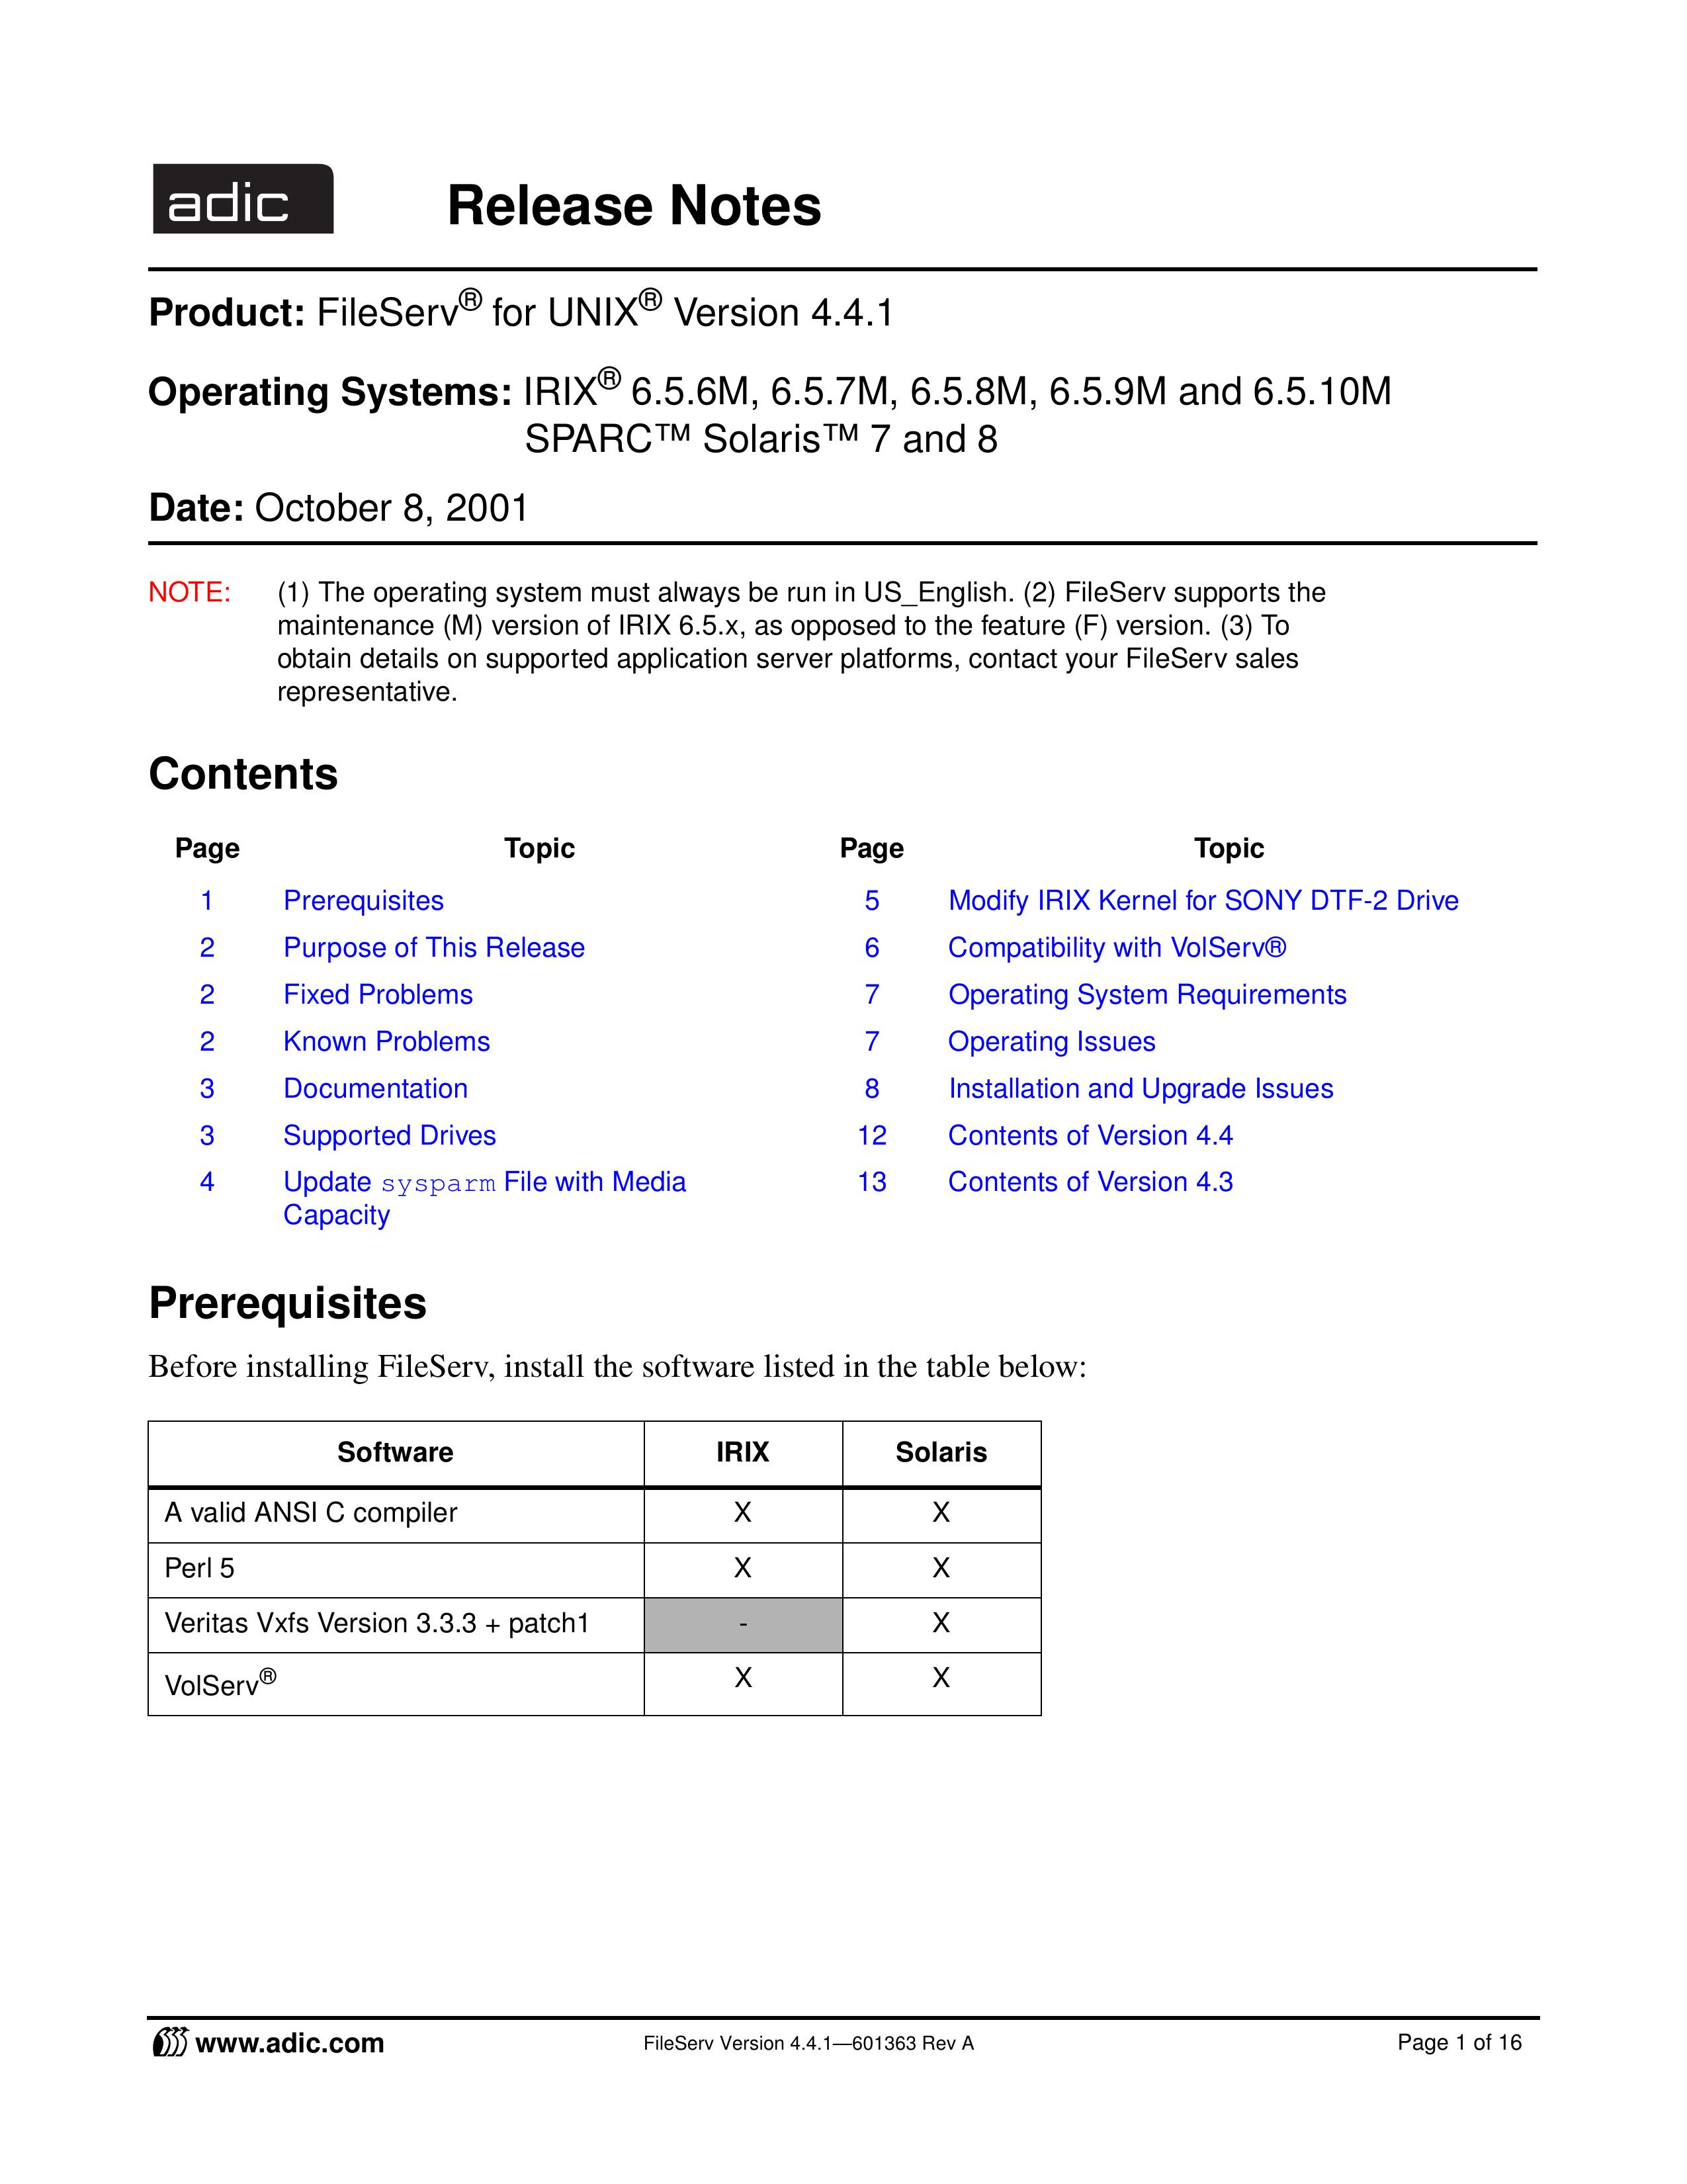 ADIC FileServ Version 4.4.1601363 Life Jacket User Manual